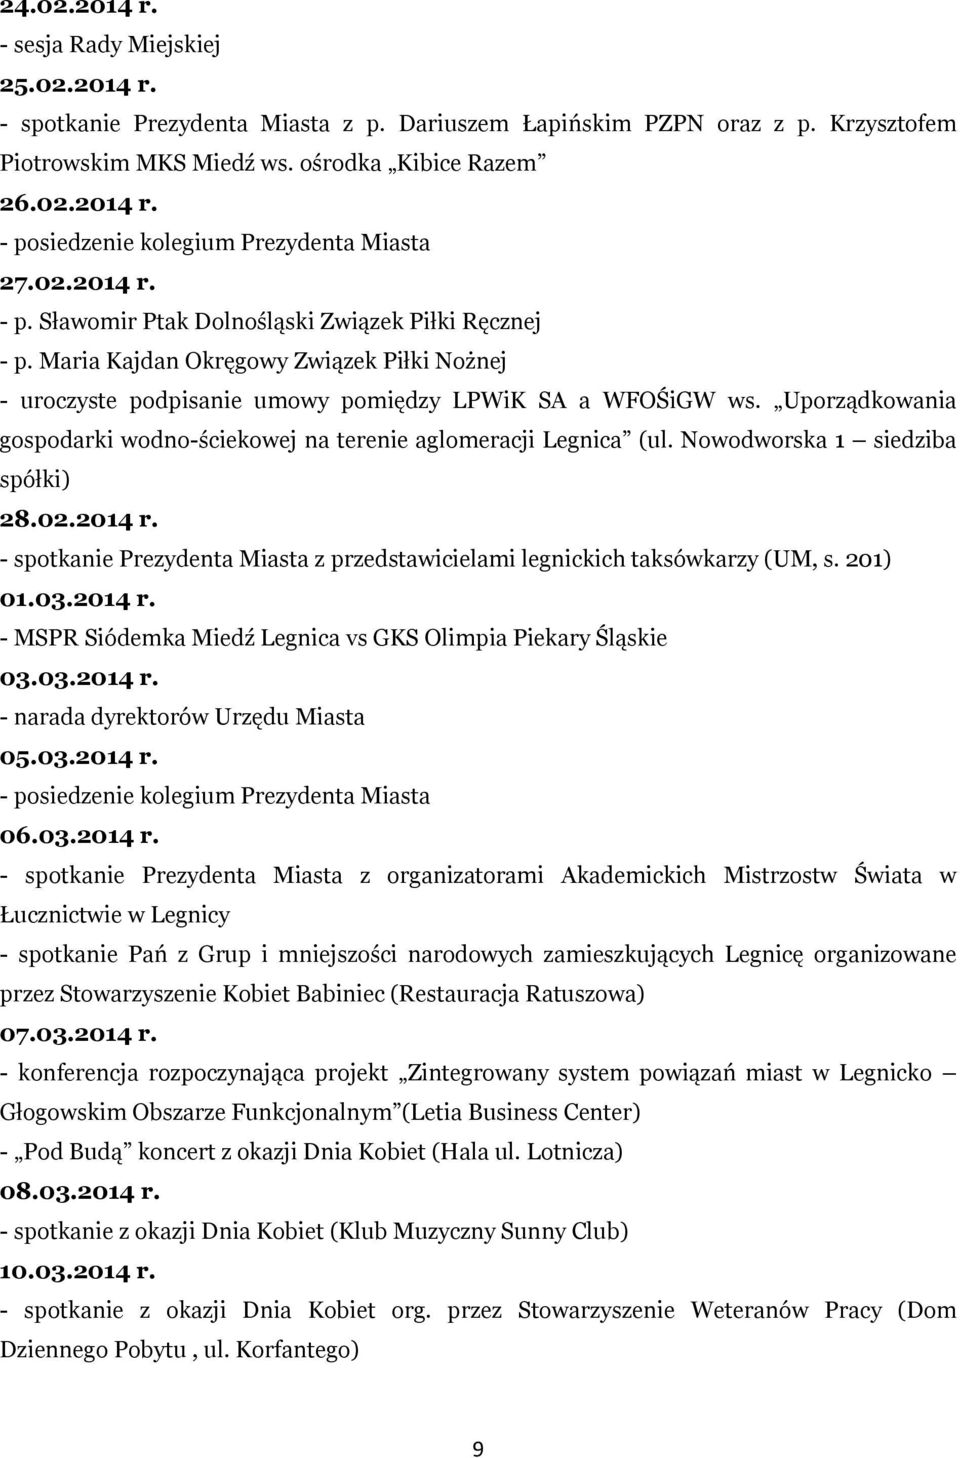 Uporządkowania gospodarki wodno-ściekowej na terenie aglomeracji Legnica (ul. Nowodworska 1 siedziba spółki) 28.02.2014 r.